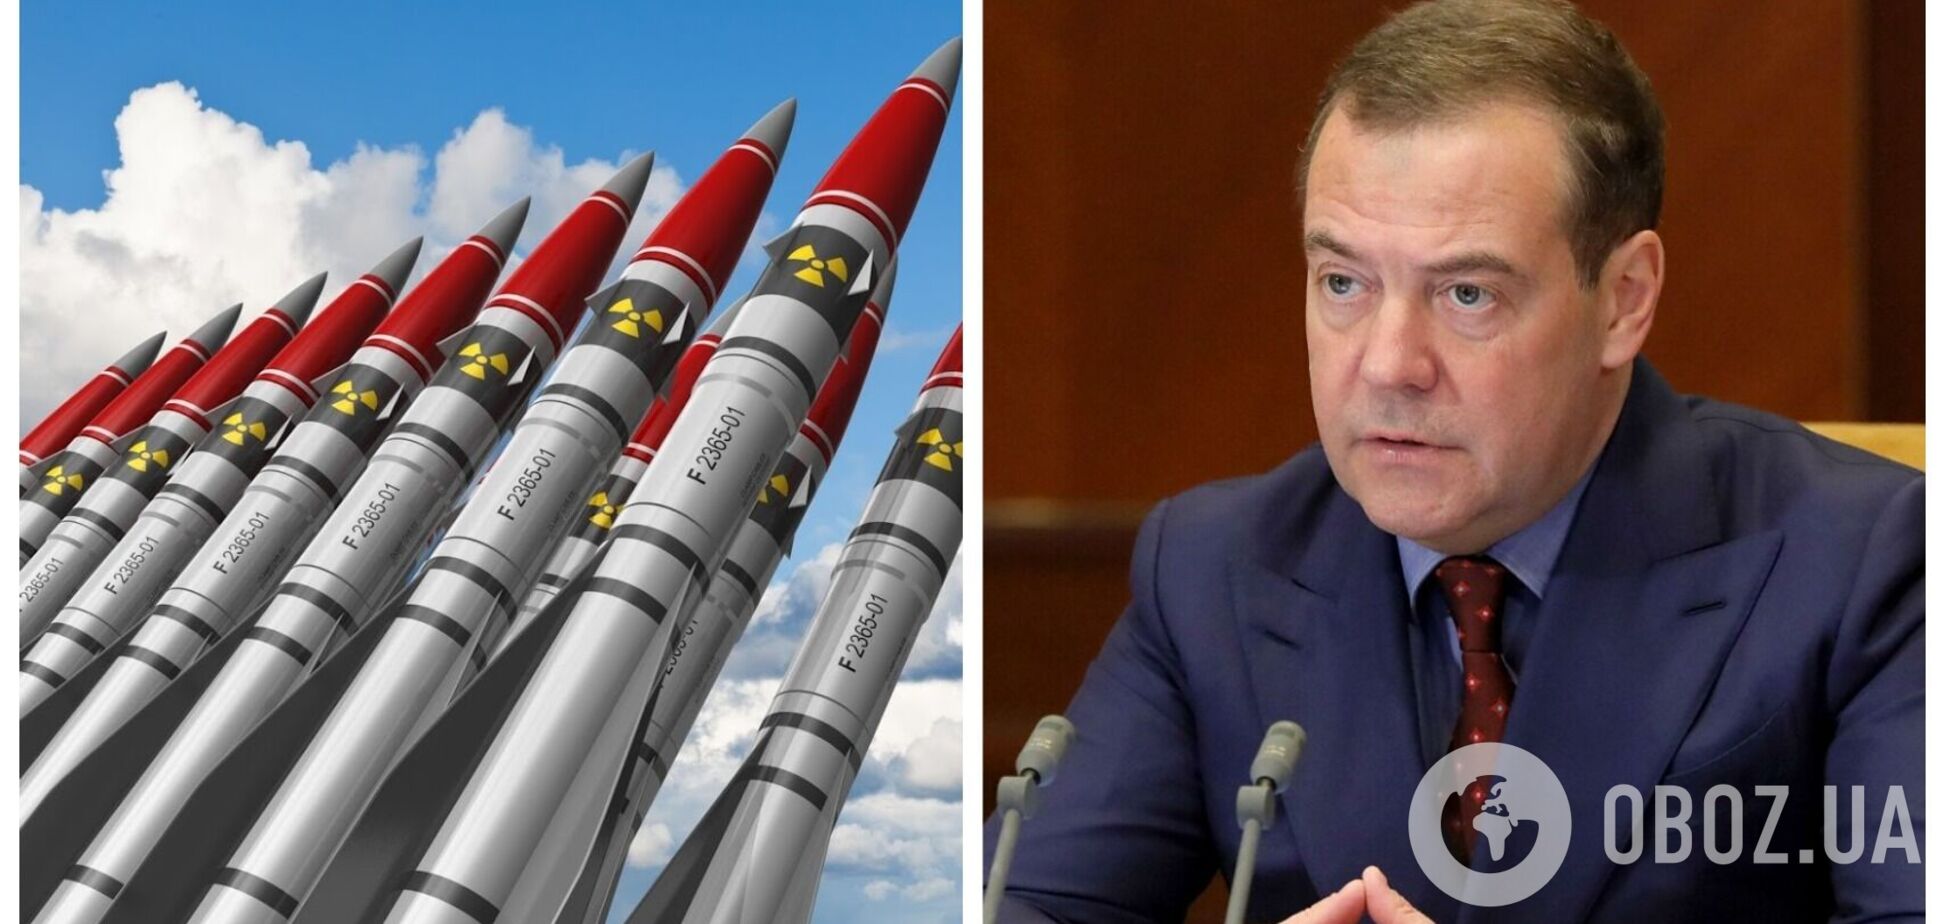 ’Нельзя воевать с Россией’: Медведев выдал очередную порцию угроз США после заявления Путина о выходе из ДСНВ